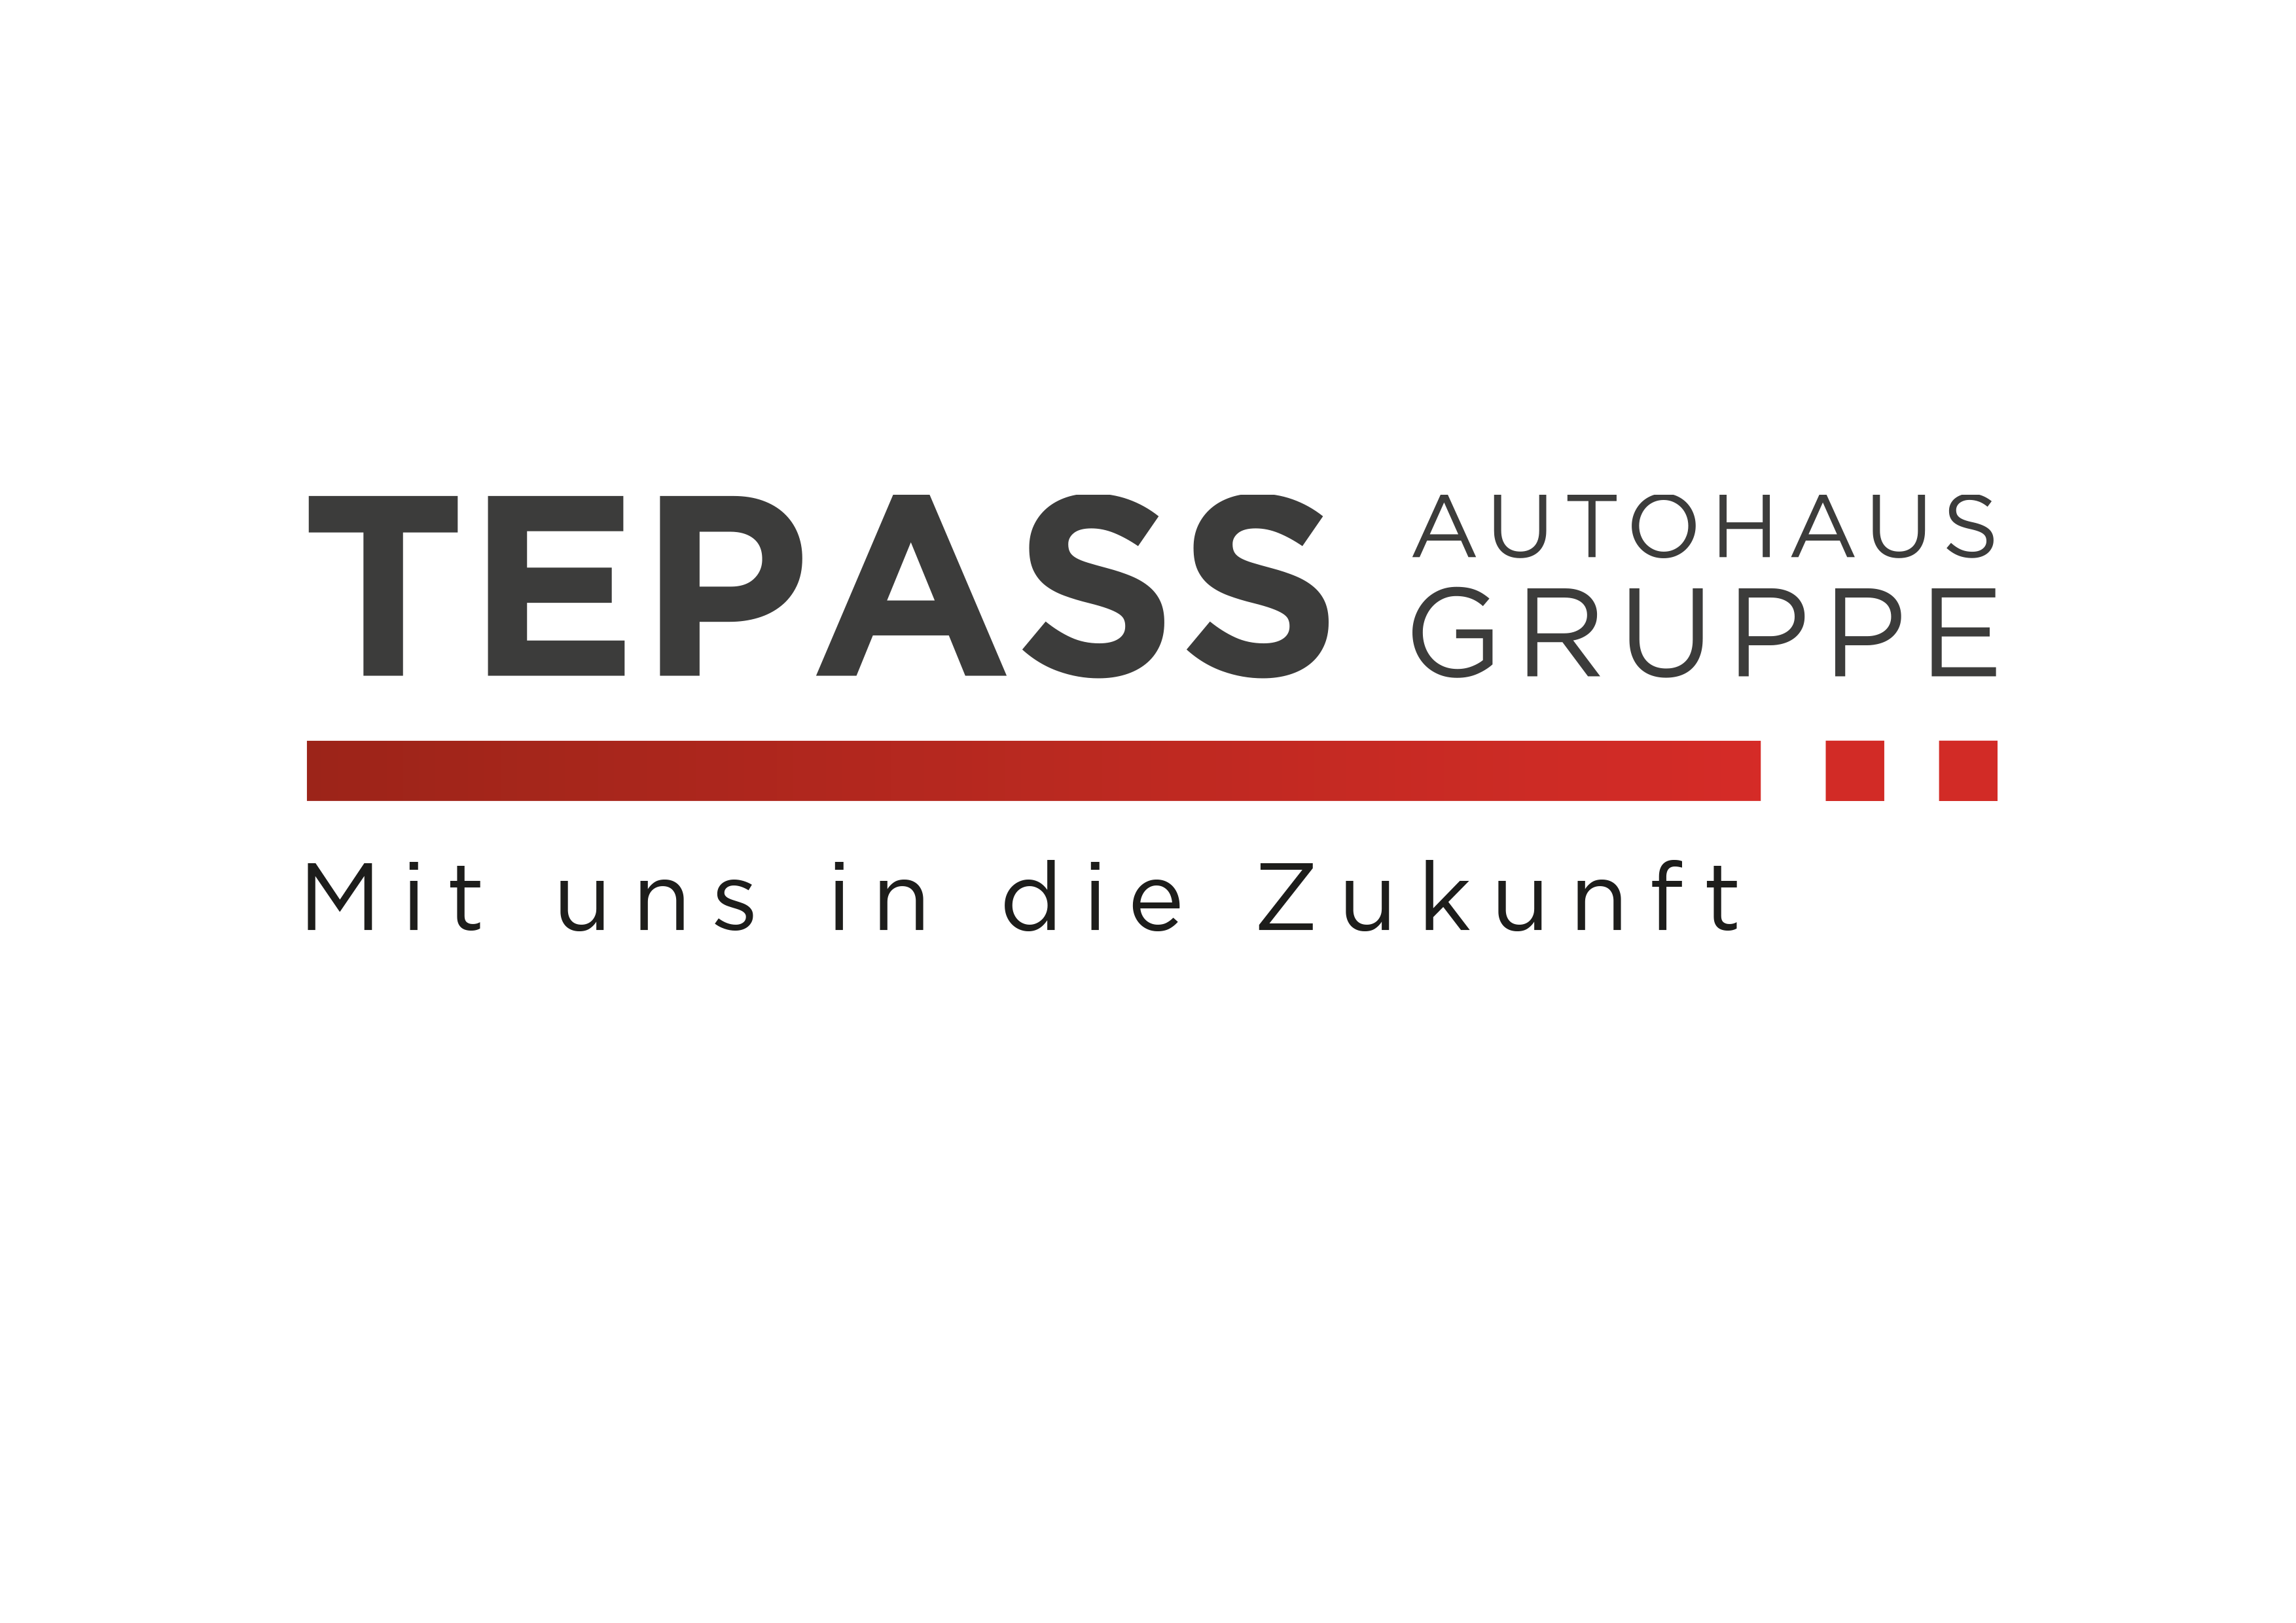 Tepass Autohausgruppe